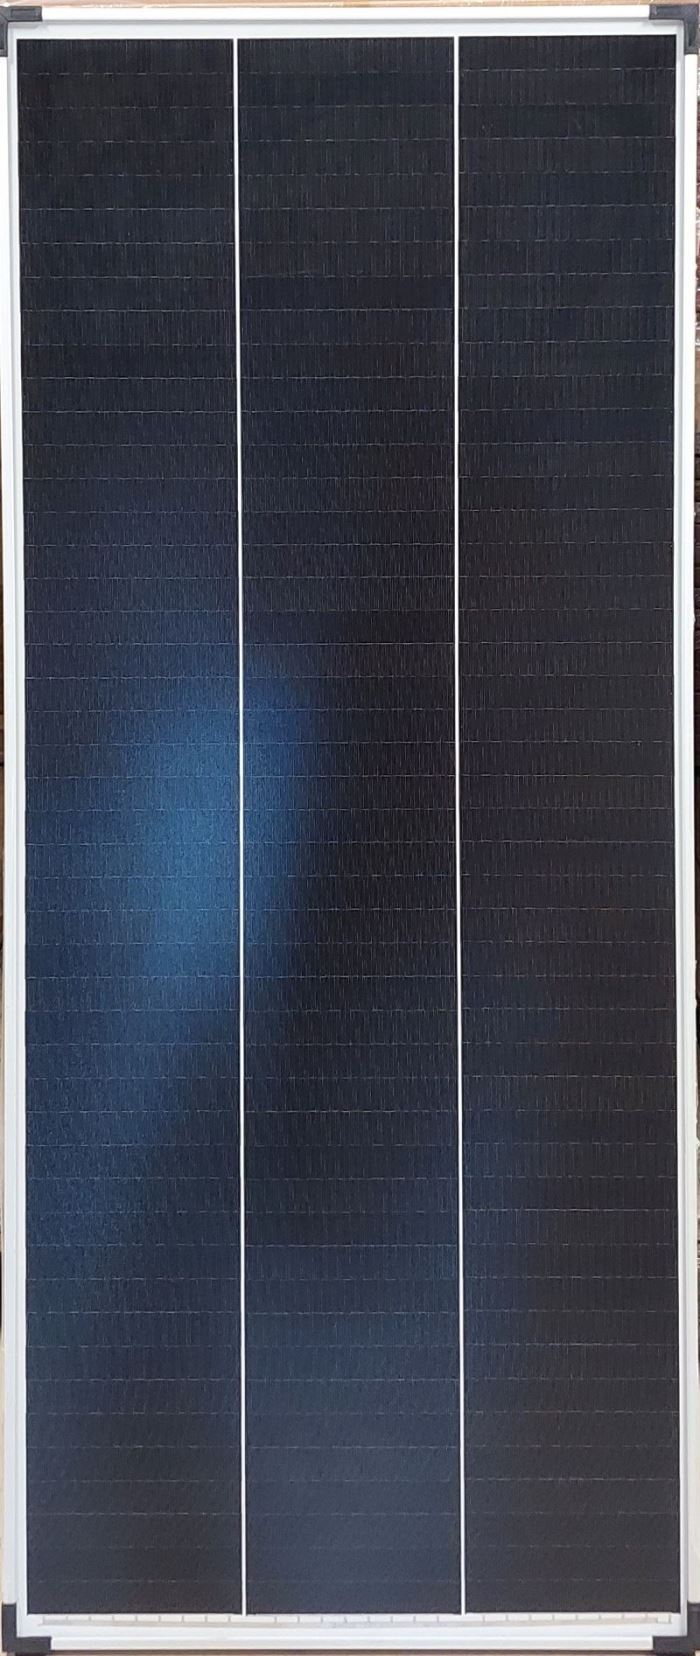 Obrázek zboží Fotovoltaický solární panel 12V/200W, SZ-200-36M,1480x670x30mm